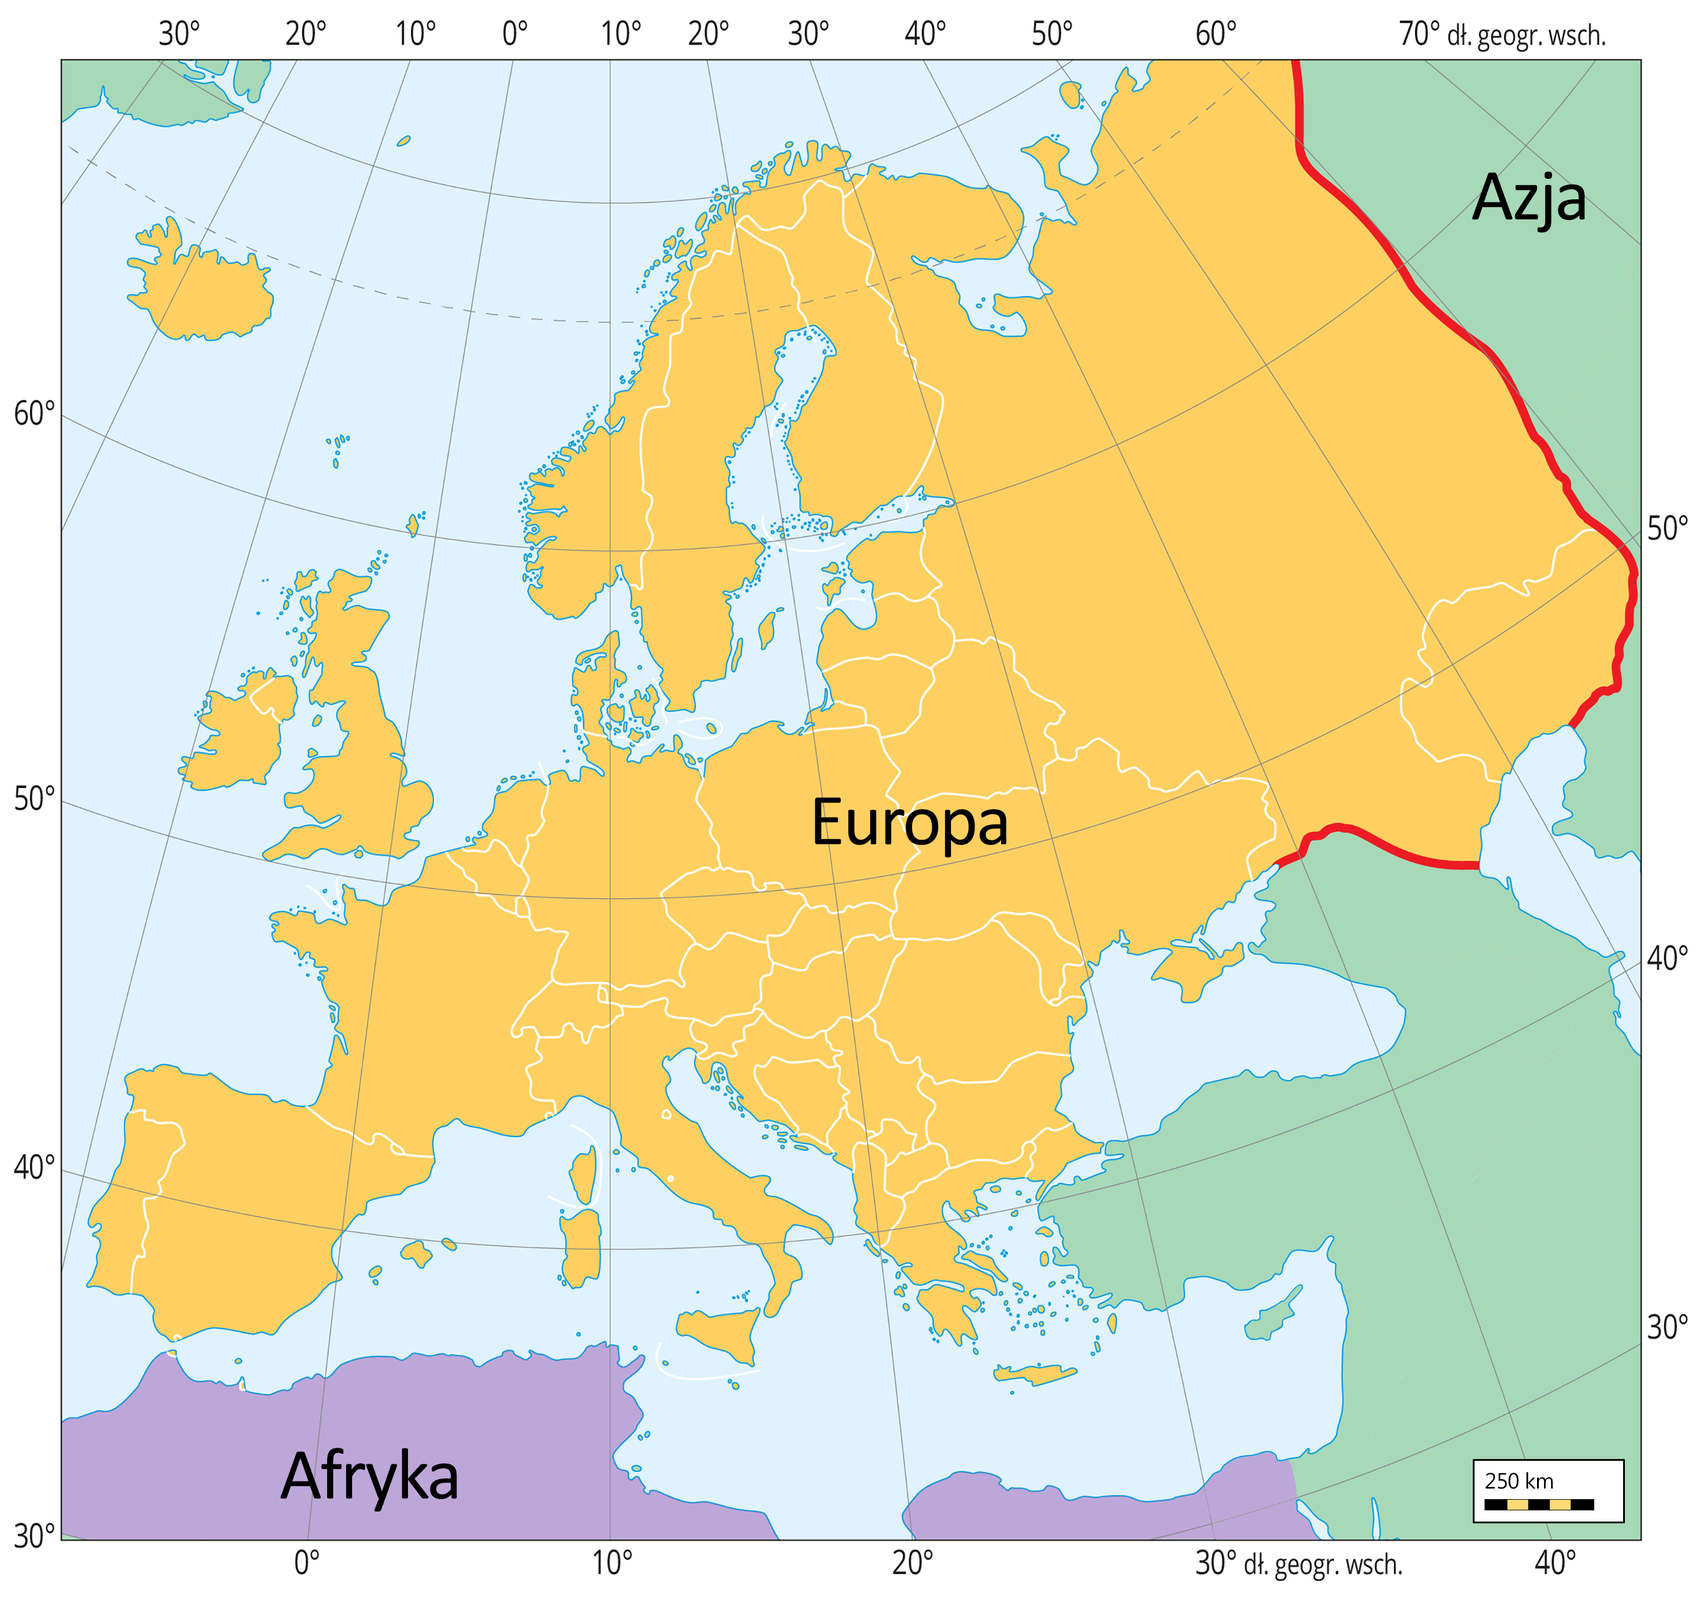 Mapa przedstawia Europę oznaczoną na żółto. Azja jest oznaczona kolorem zielonym, a Afryka fioletowym. Pomiędzy Europą a Azją narysowano czerwoną linię biegnącą wzdłuż gór Ural oraz między Morzem Azowskim a Kaspijskim, oddzielającą te dwa kontynenty.